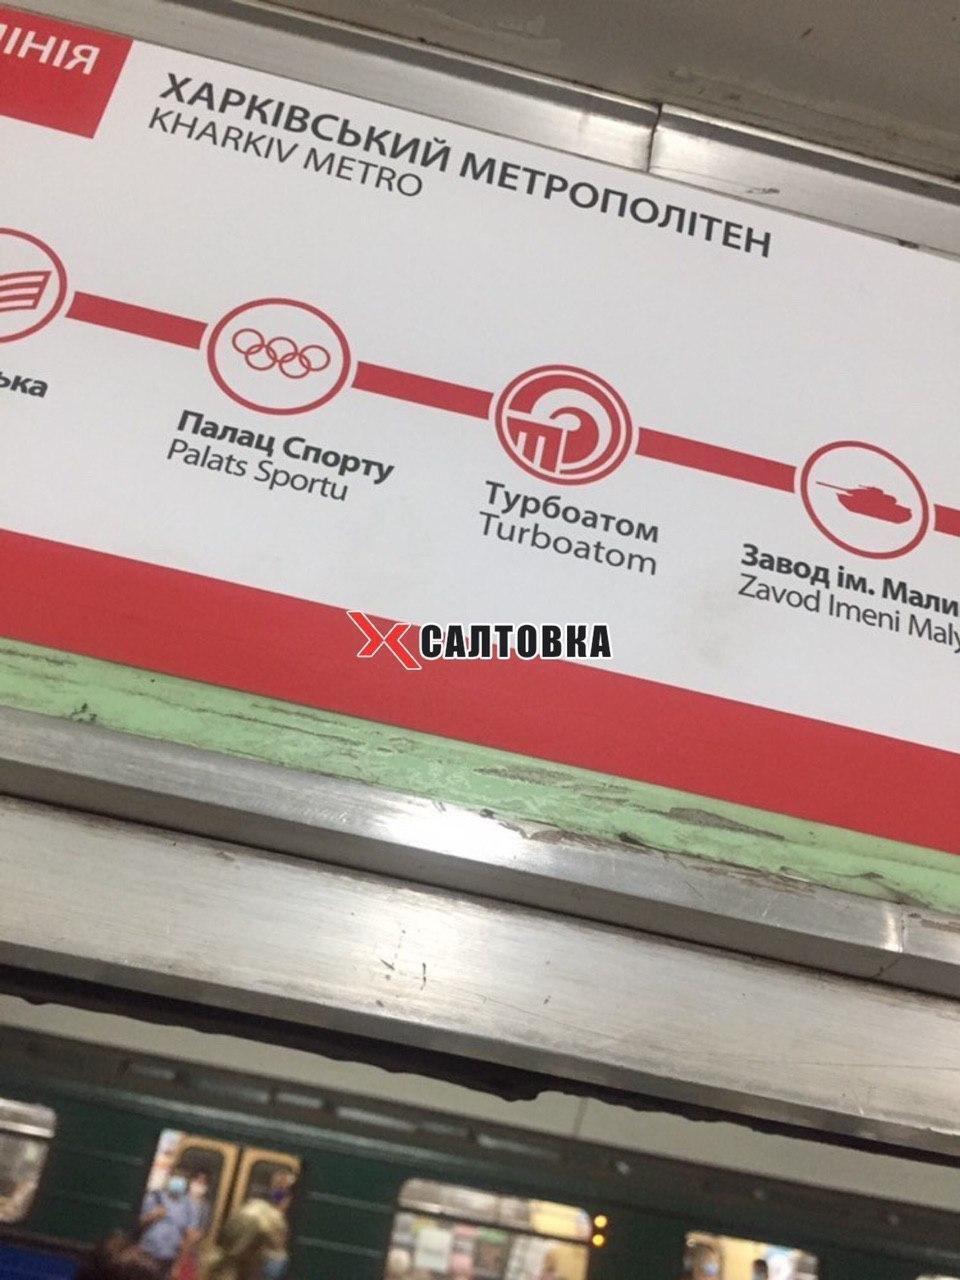 В Харькове переименовали станцию метро "Московский проспект": как теперь называется